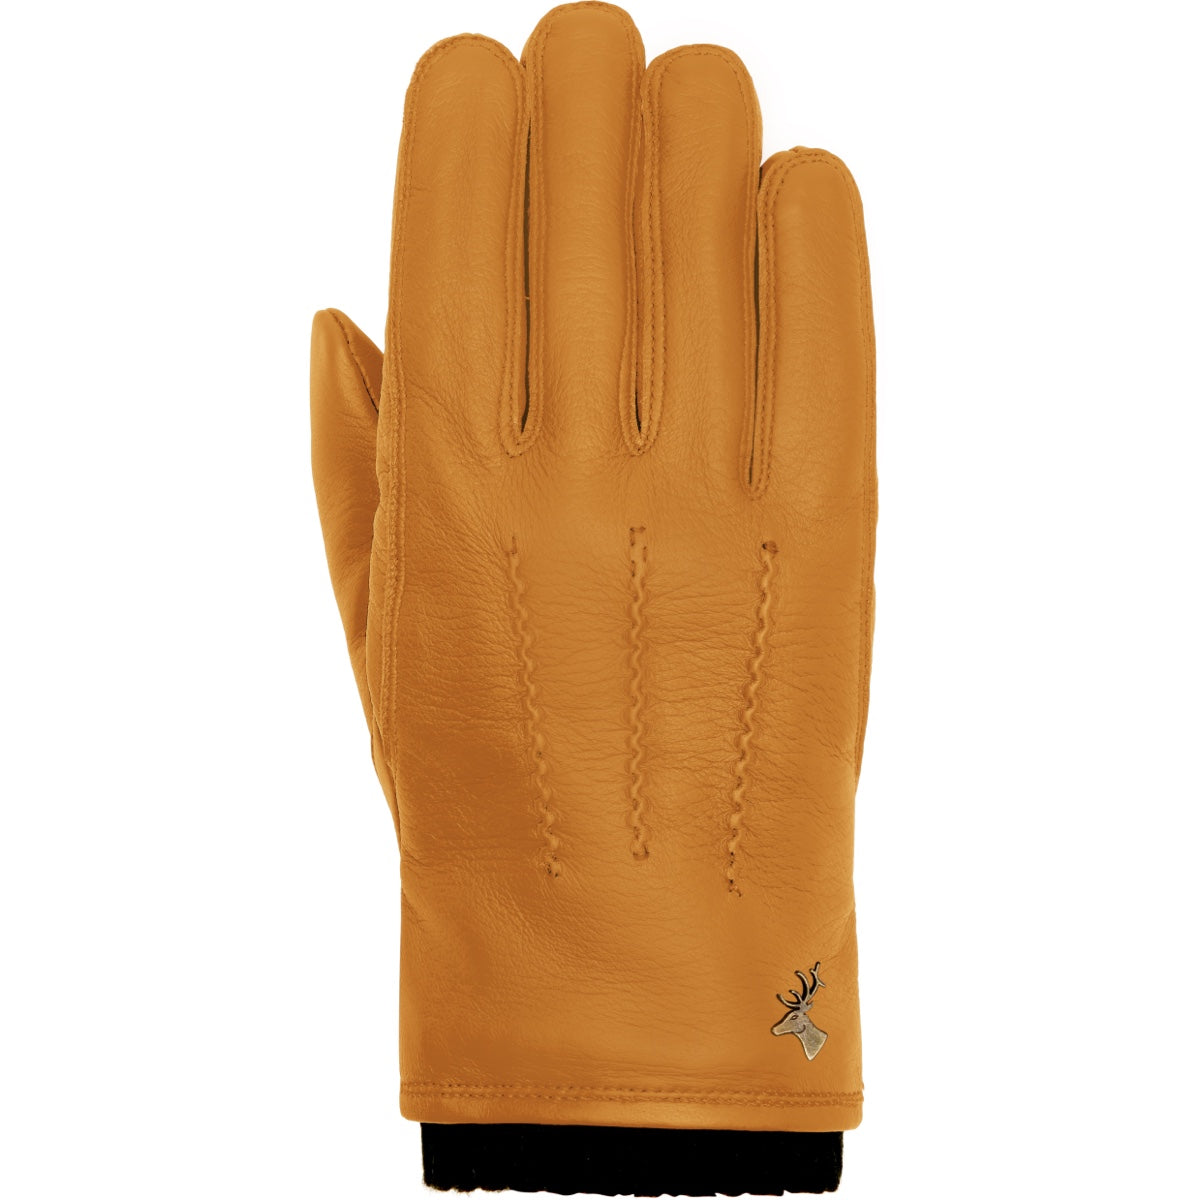 http://www.schwartz-vonhalen.fr/cdn/shop/files/Leo-yellow-leather-gloves-men-schwartz-von-halen-1.jpg?v=1695844100